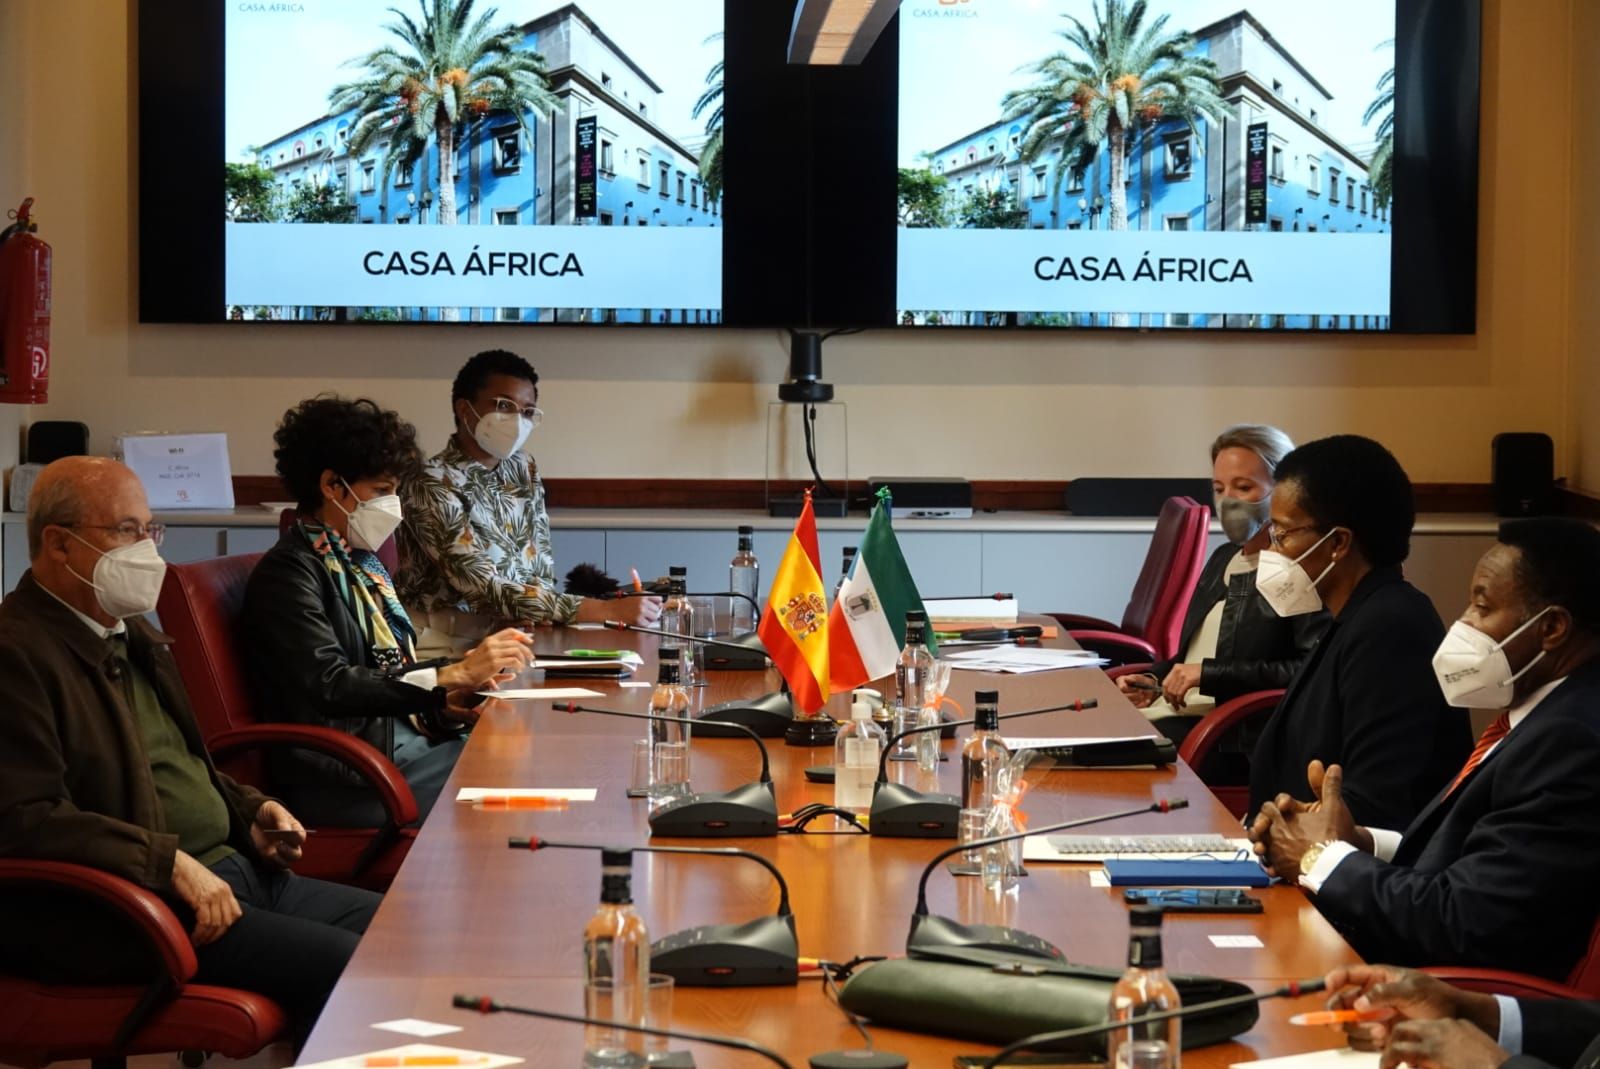 El embajador de Guinea Ecuatorial en España visita Casa África. Aquí la delegación en la Sala del Consejo de Casa África, donde conocieron los programas de la institución.